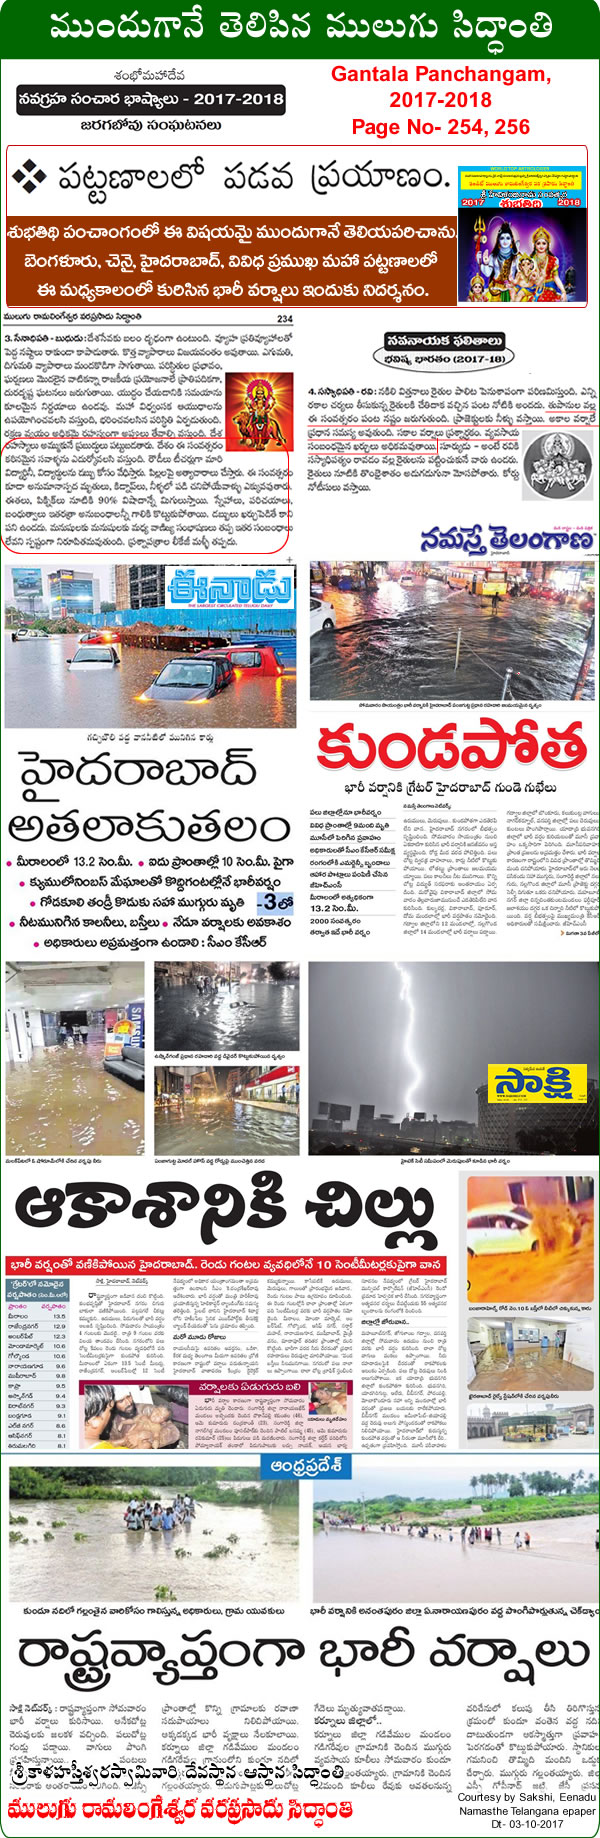 Predicted by Mulugu Ramalingeshwara Varaprasad Siddhant in his Shubhatithi Panchangam 2017-2018- Cloudburst drowns citys -
                  Havy-Rain . by Print media sources Sakshi, Eenadu Namasthe Telangana.